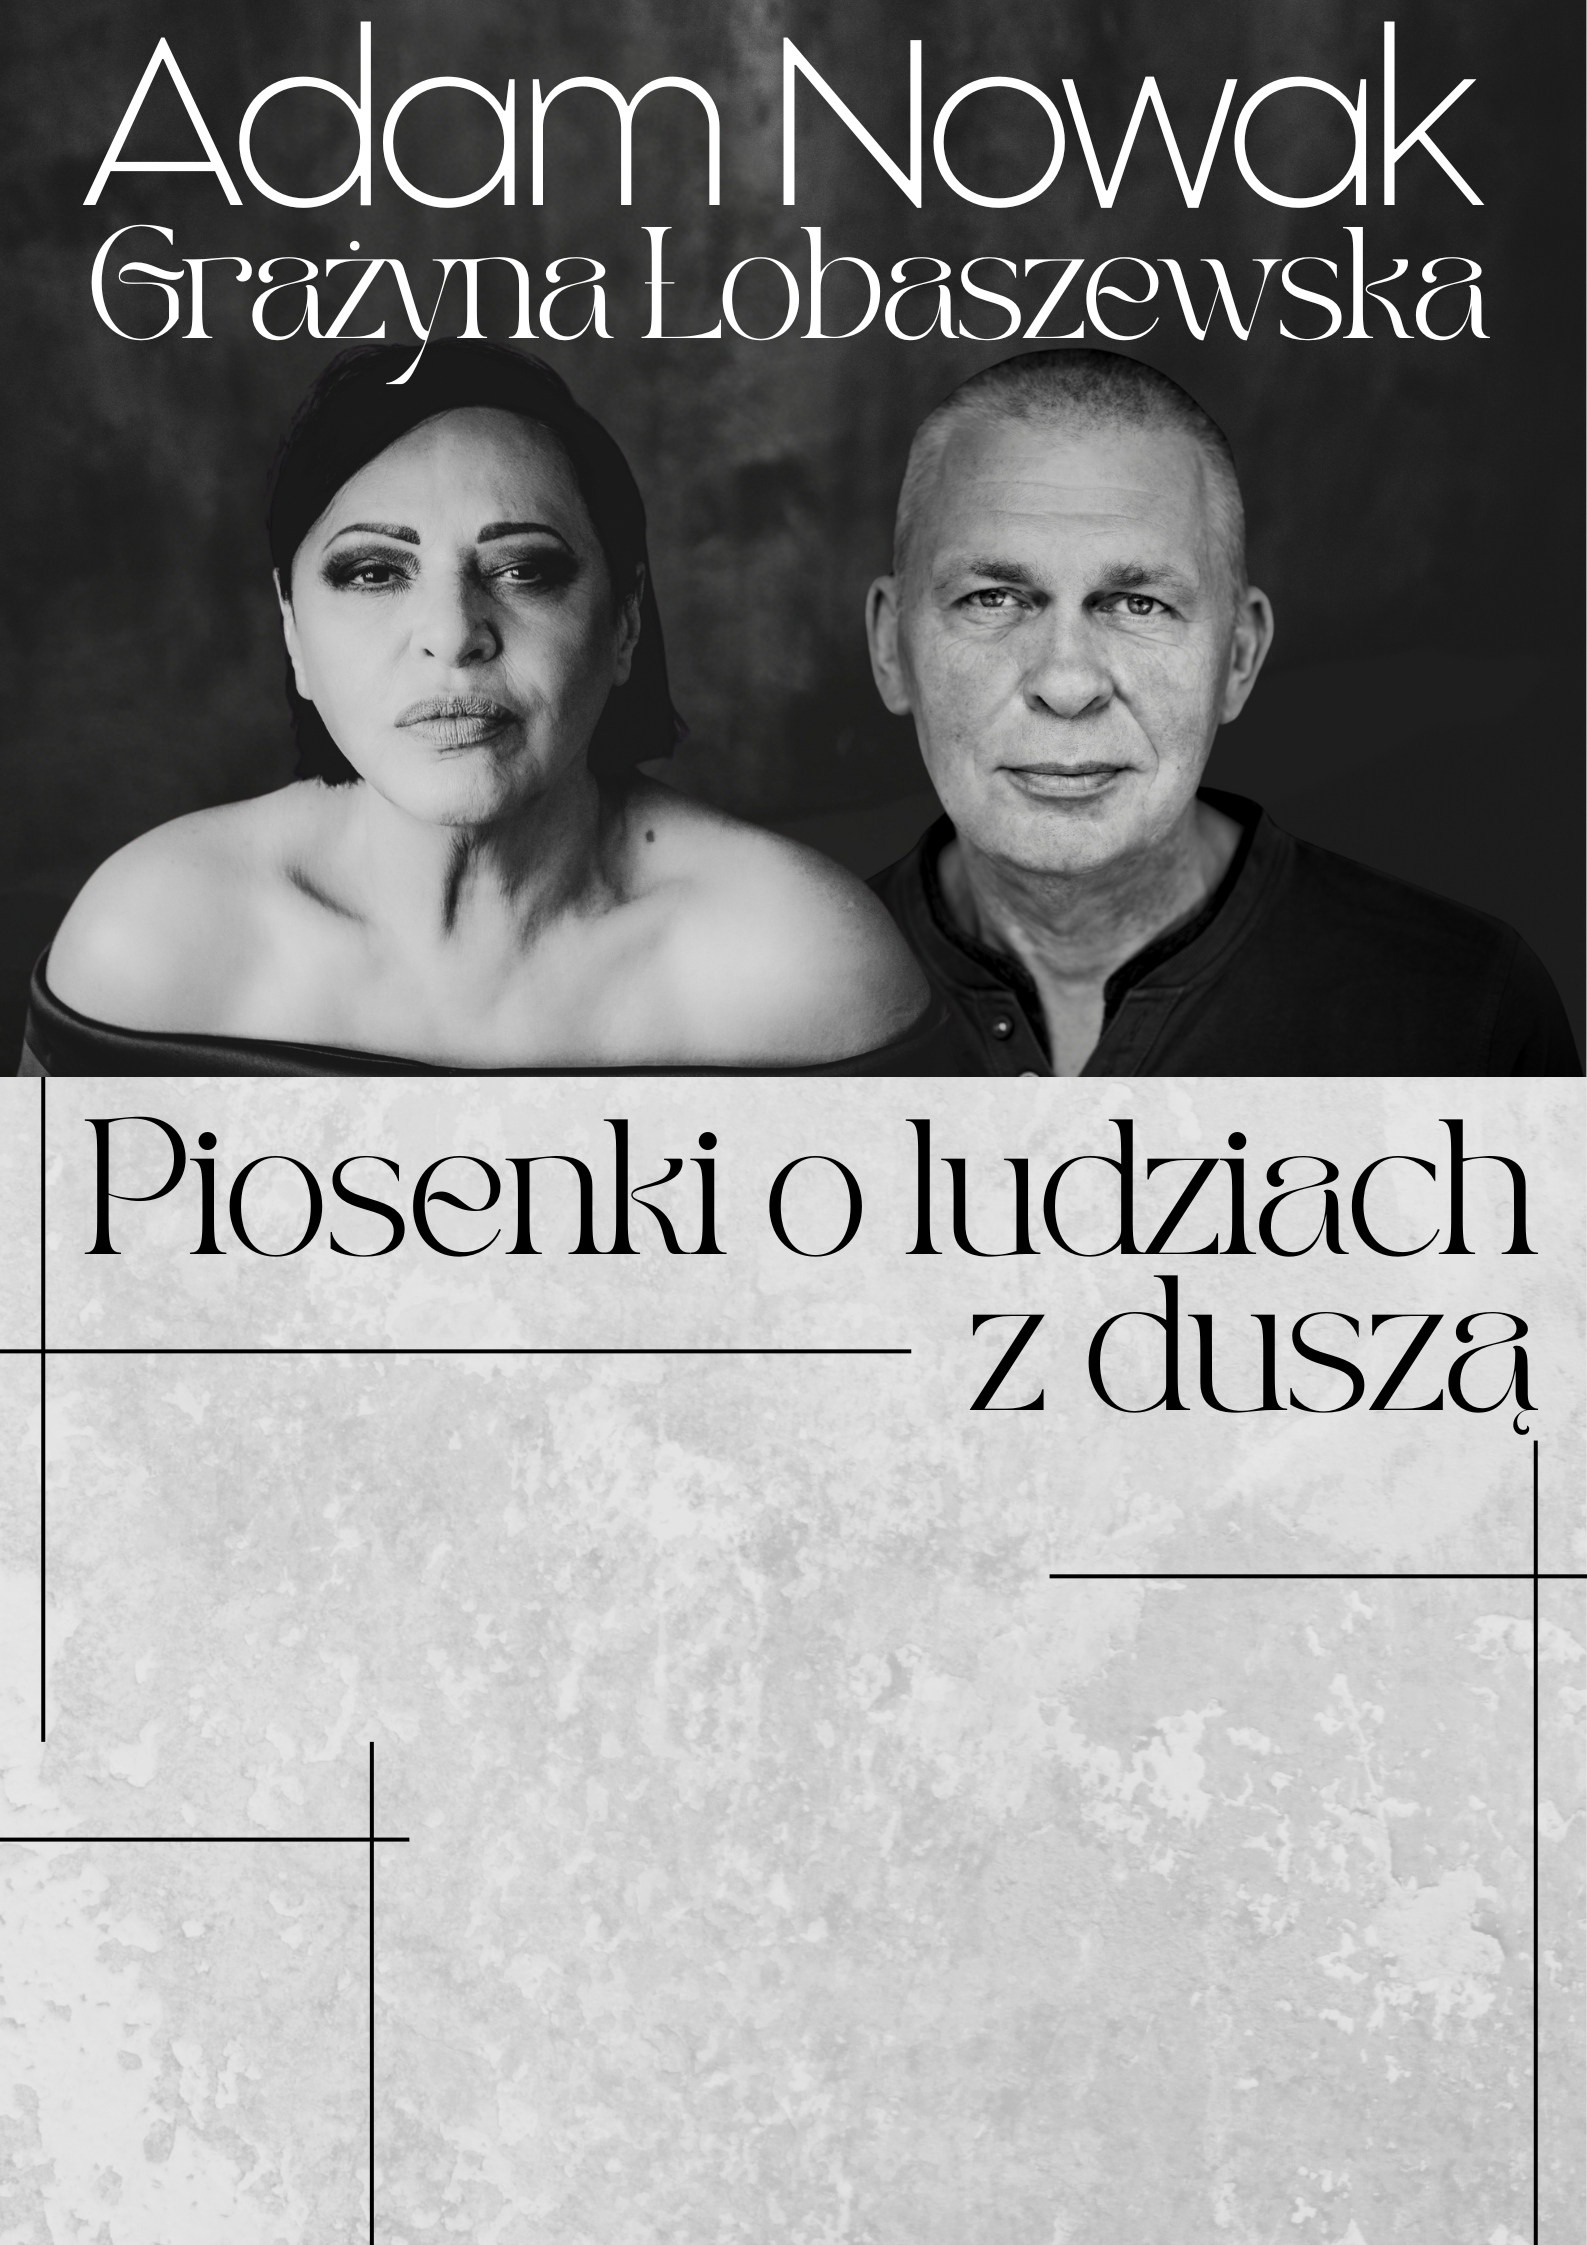 Grażyna Łobaszewska i Adam Nowak - koncert